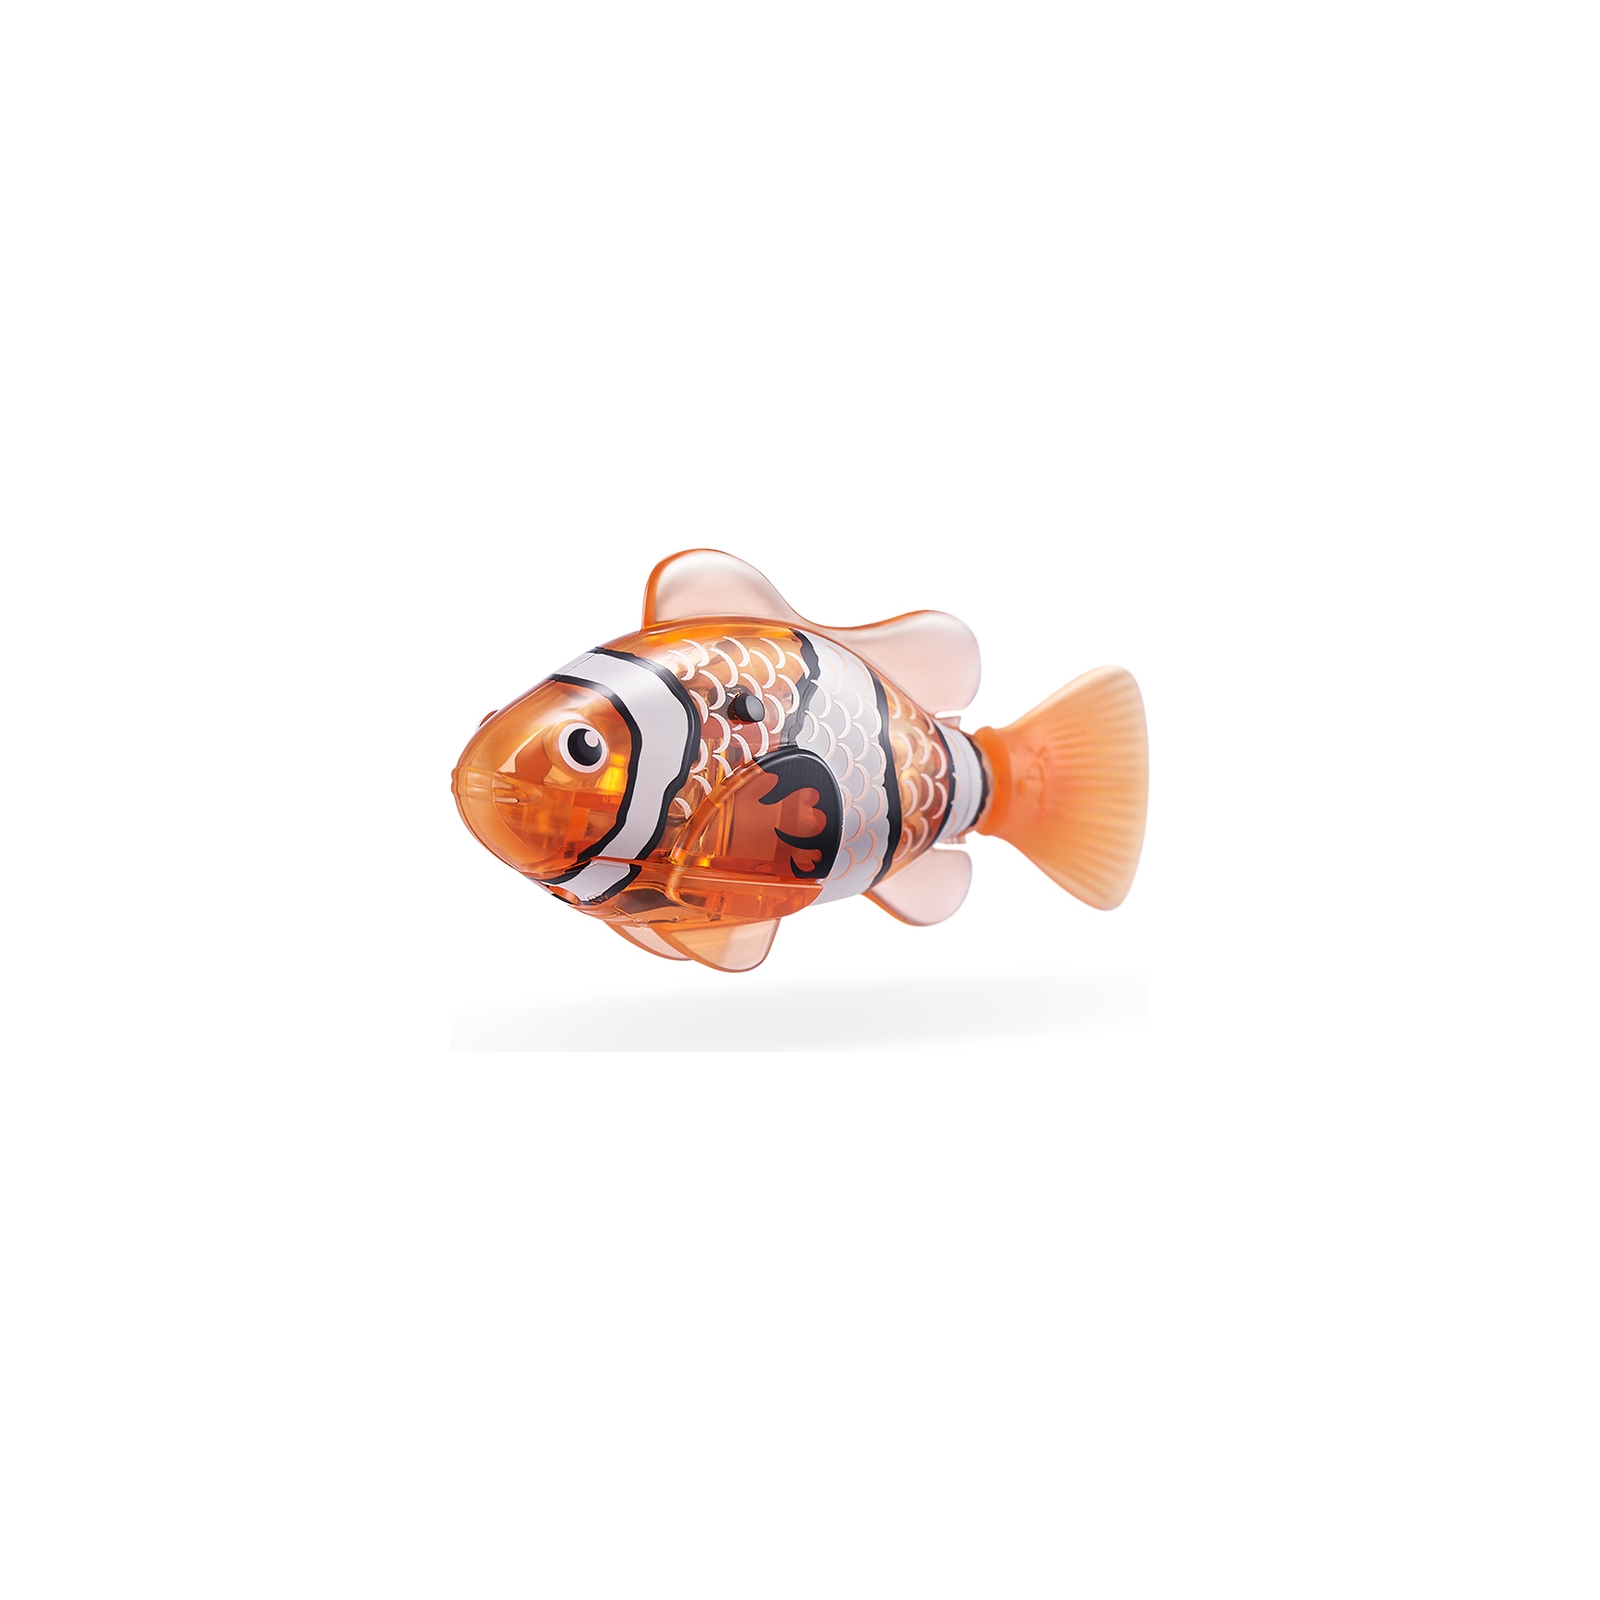 Интерактивная игрушка Pets & Robo Alive S3 - Роборыбка (оранжевая) (7191-5) изображение 2